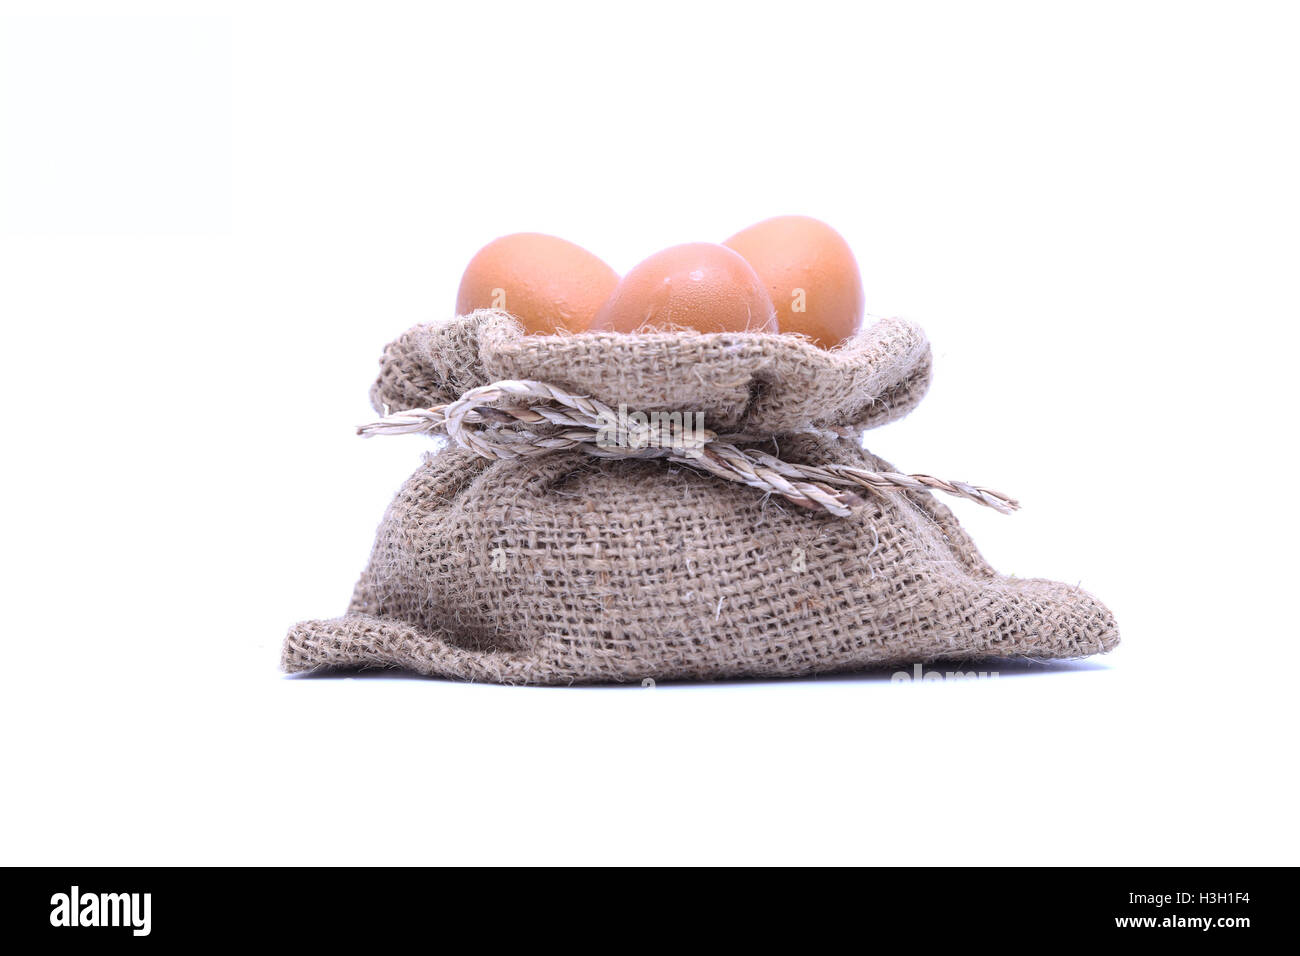 Uova di colore marrone nel sacco marrone su bianco isolato Foto Stock